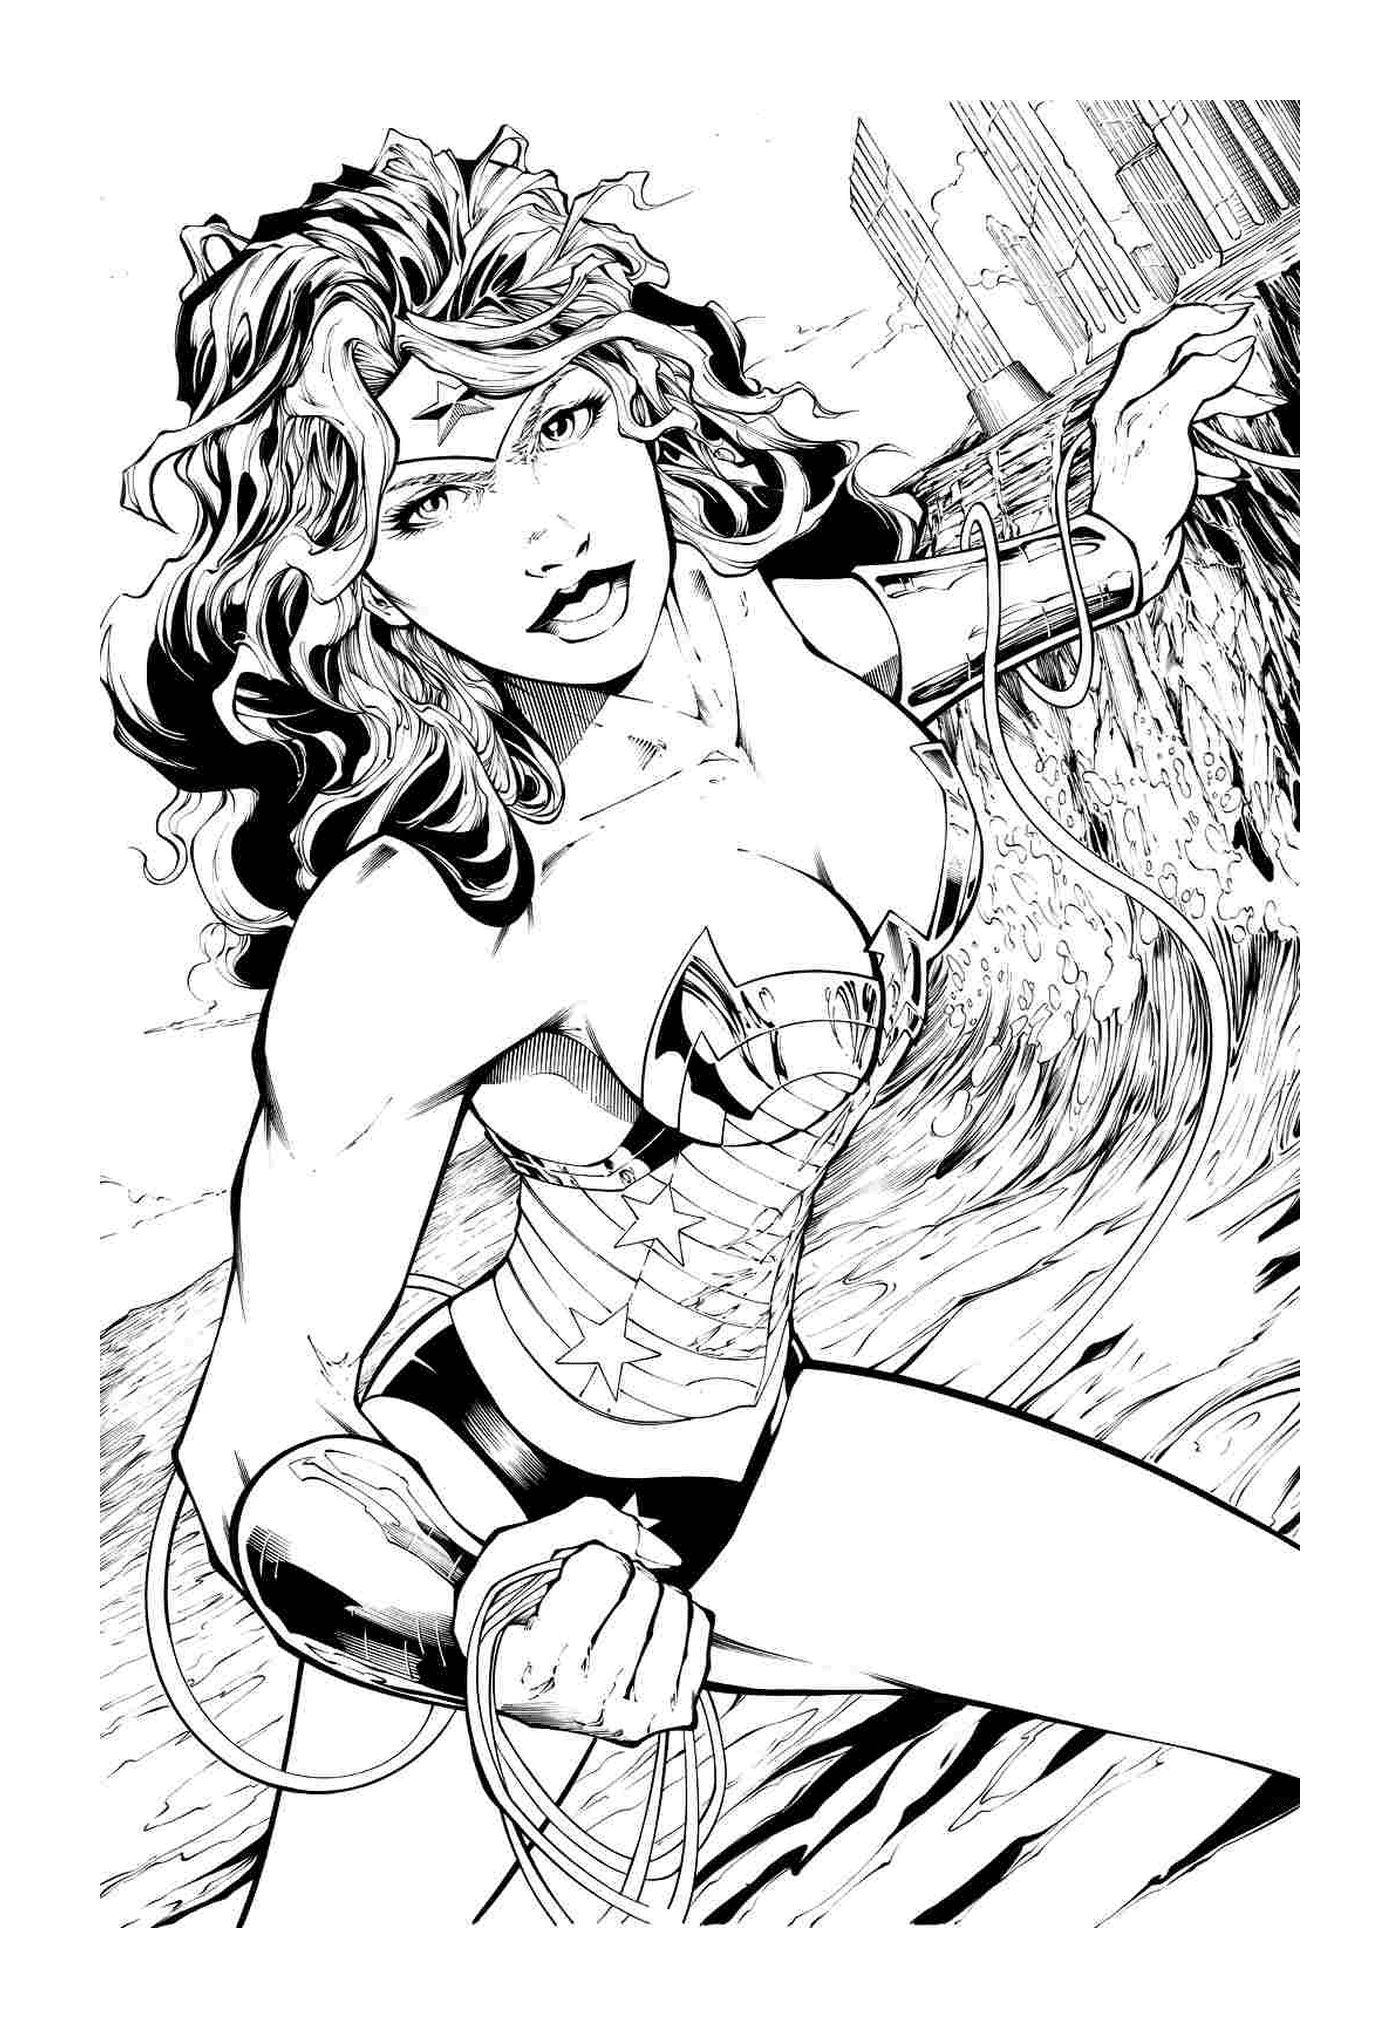  Wonder Woman adulto in combattimento 